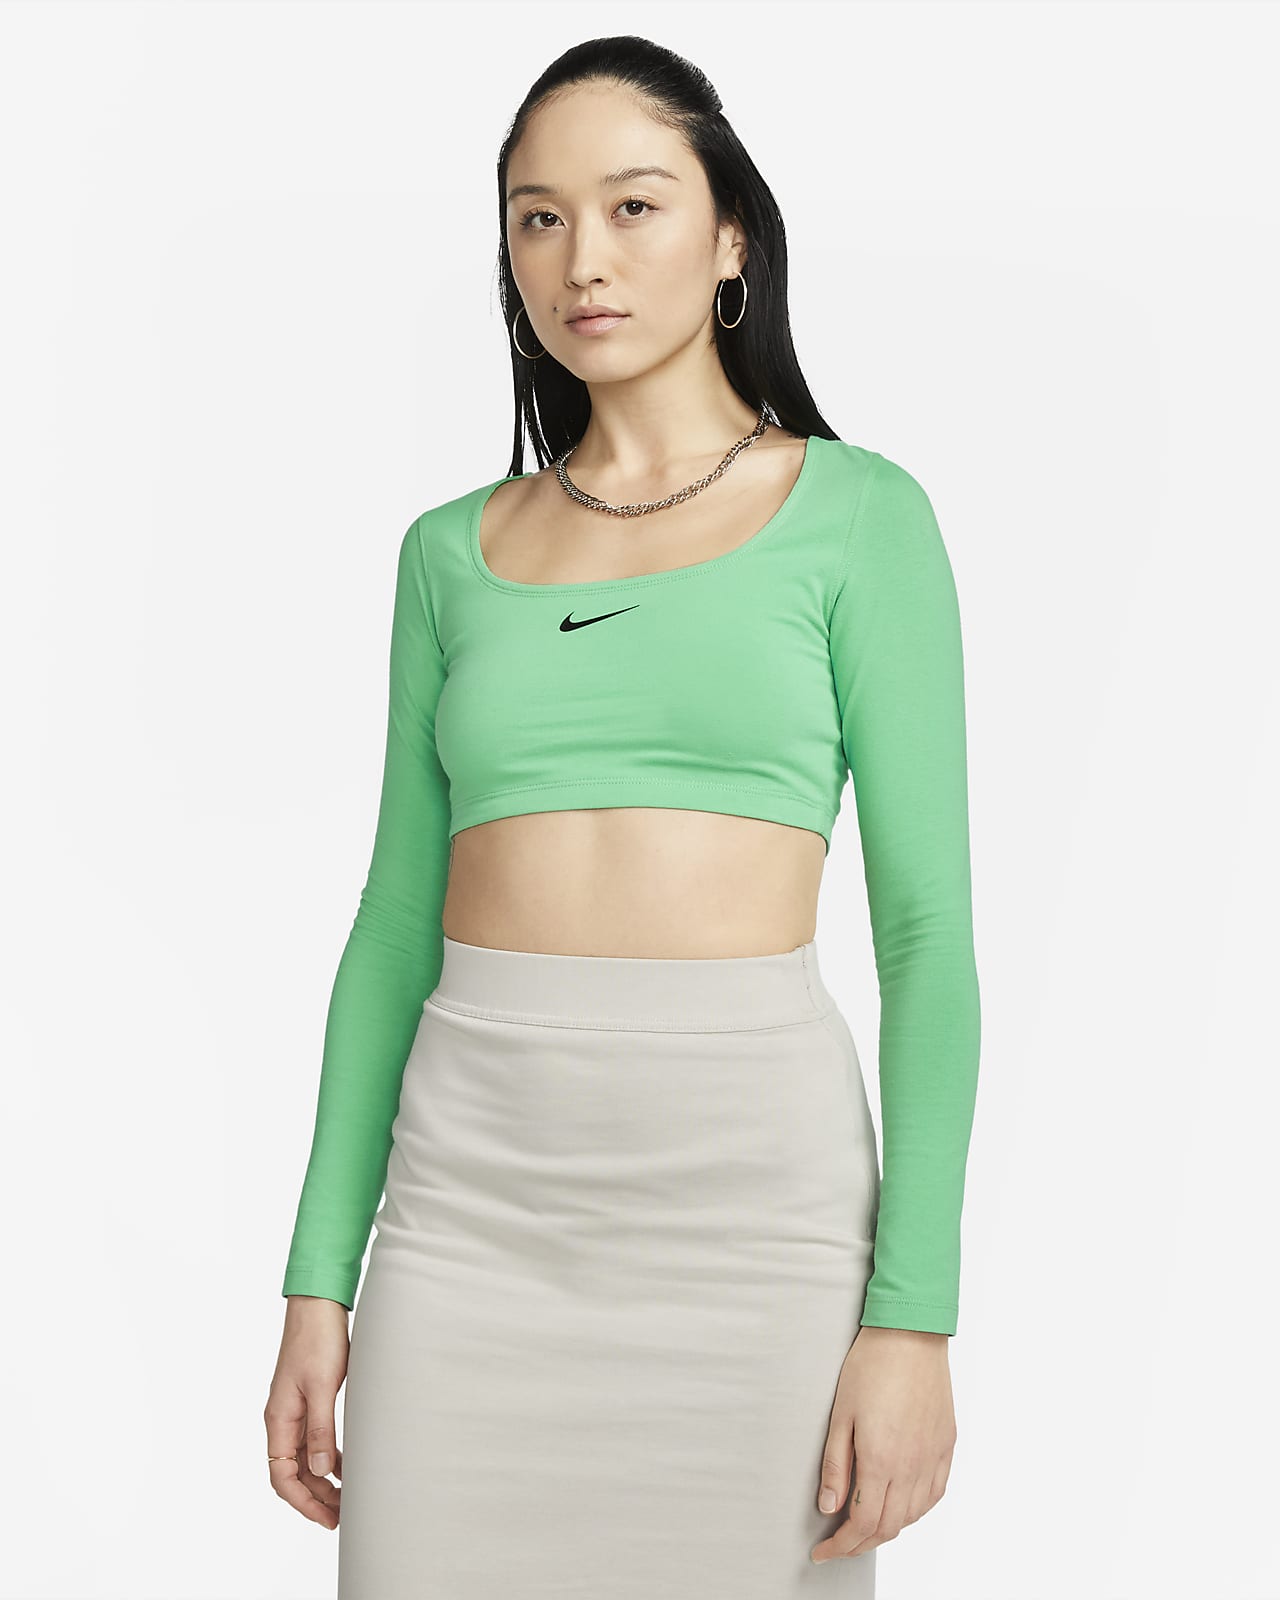 Women's Long-Sleeve Crop Top. Nike LU